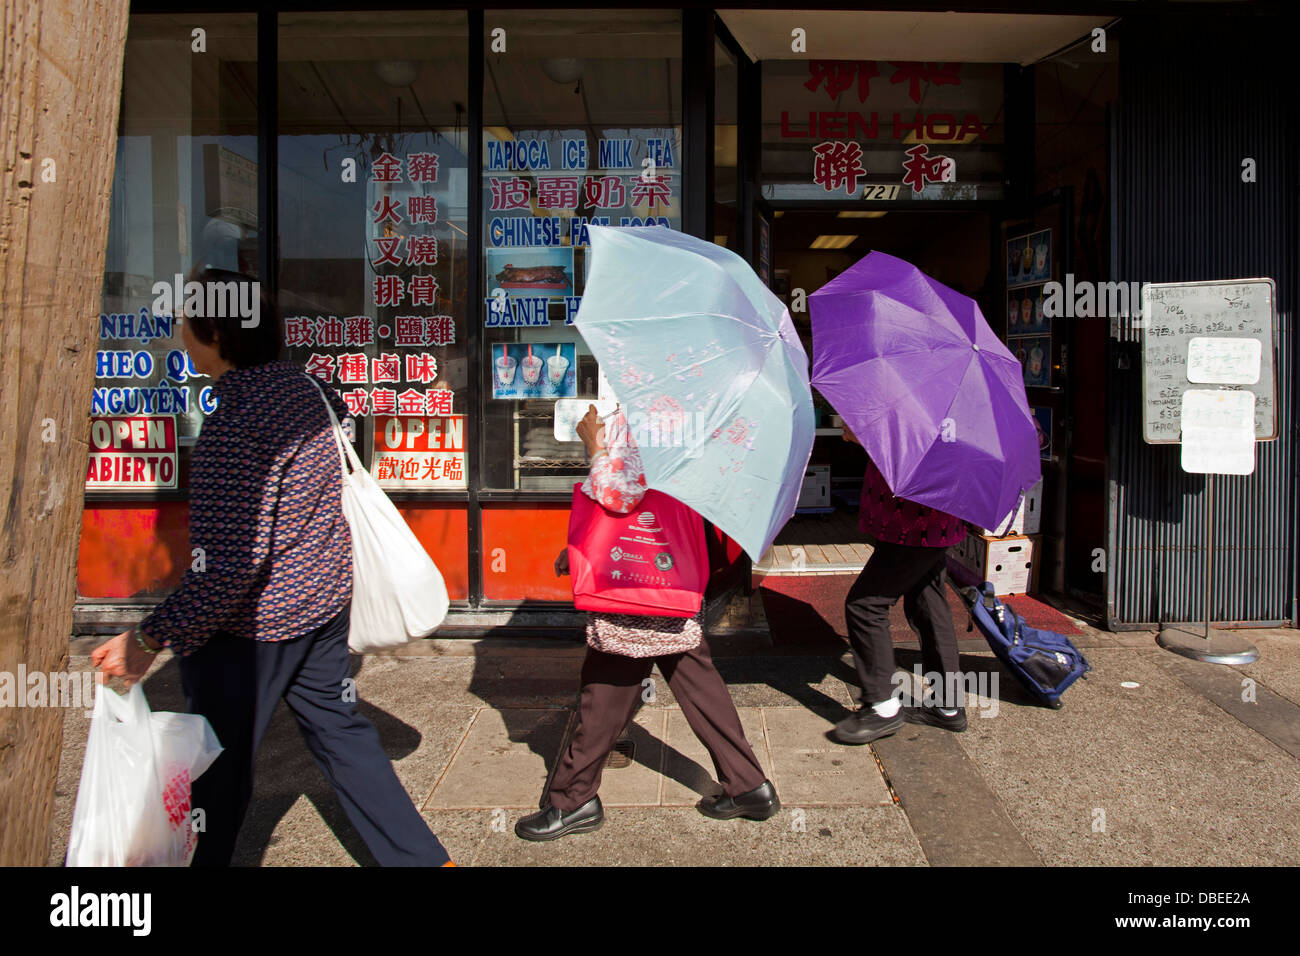 Batir el récord de calor en Chinatown. Las mujeres utilizan paraguas para la sombra. Los Angeles, California Foto de stock